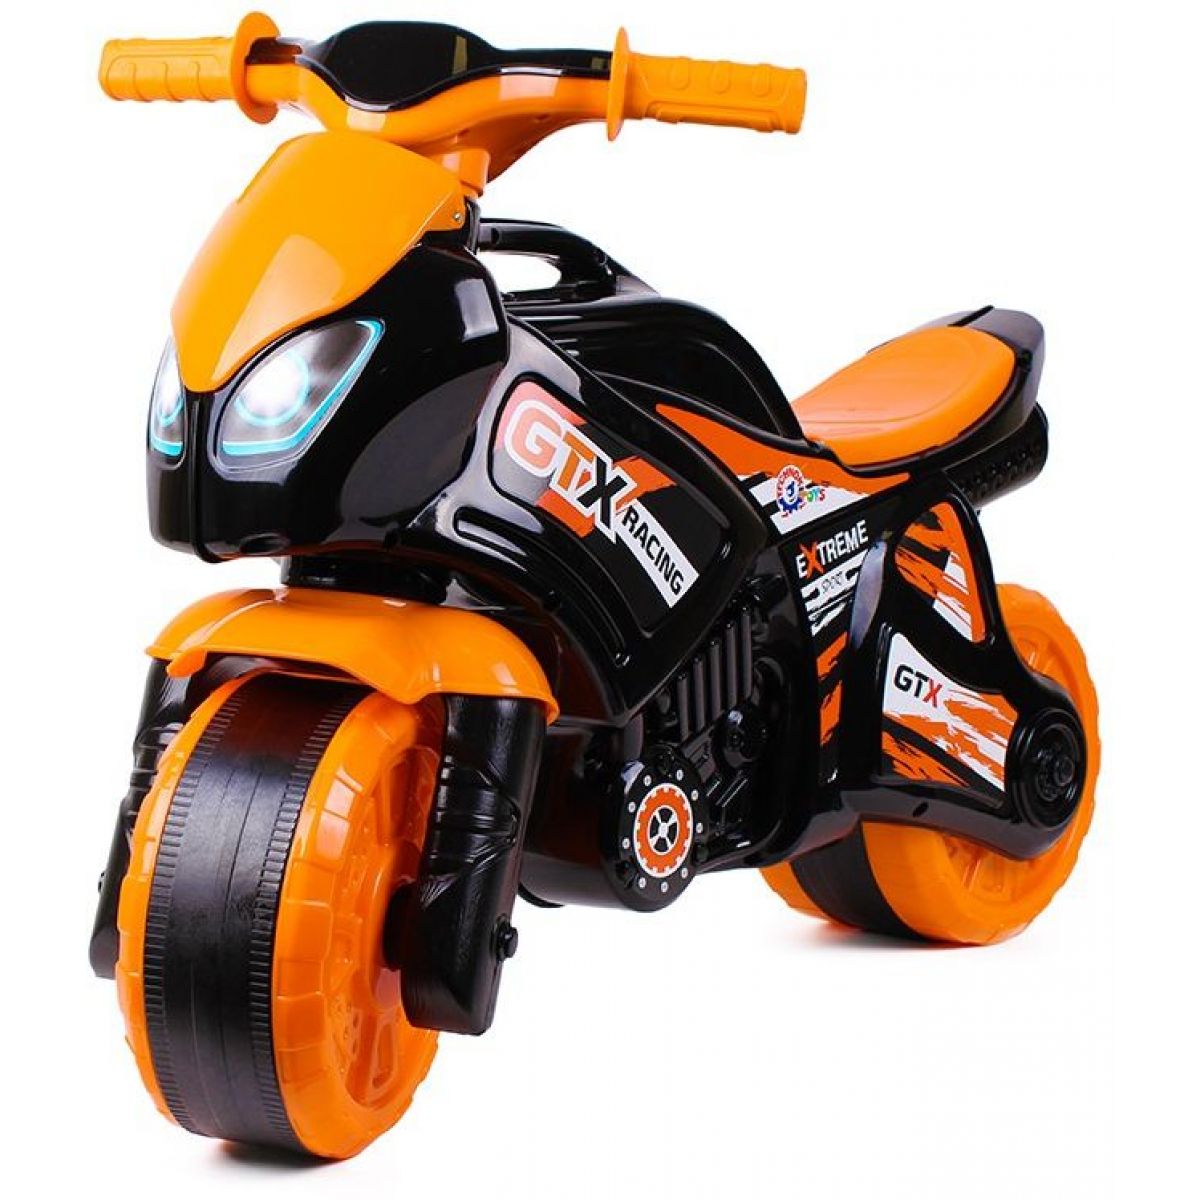 Odrážadlo motorka oranžovo-čierna